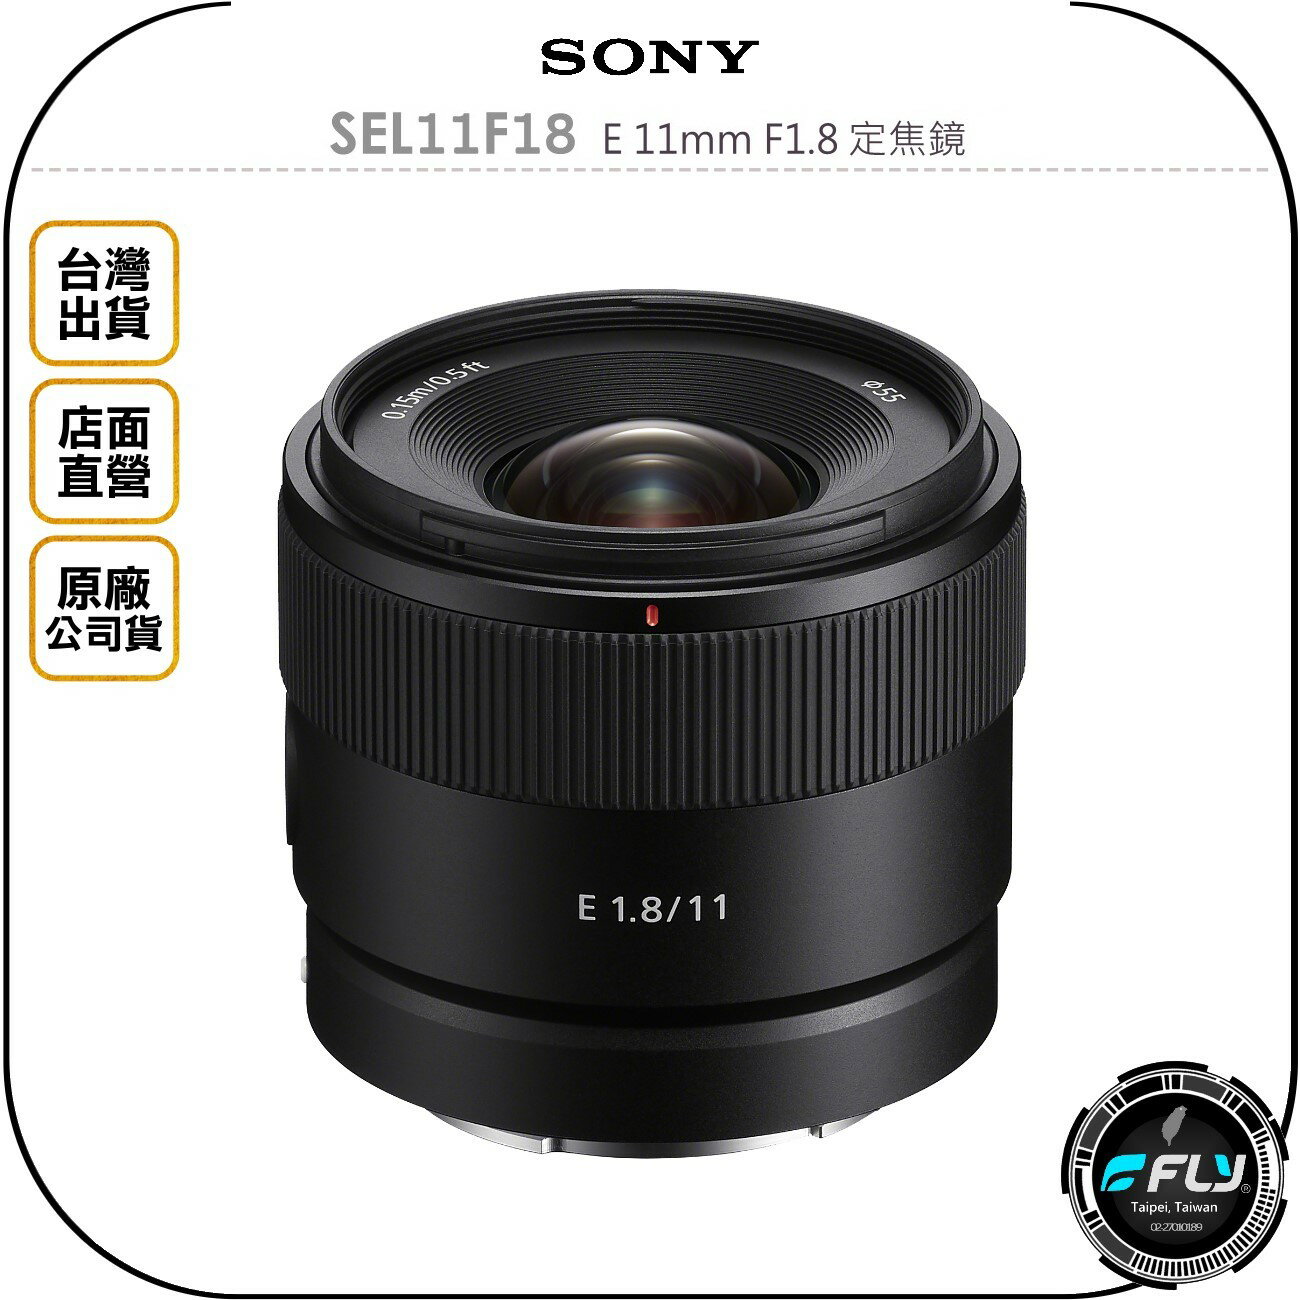 《飛翔無線3C》SONY SEL11F18 E 11mm F1.8 定焦鏡◉原廠公司貨◉風景廣角◉旅遊影片